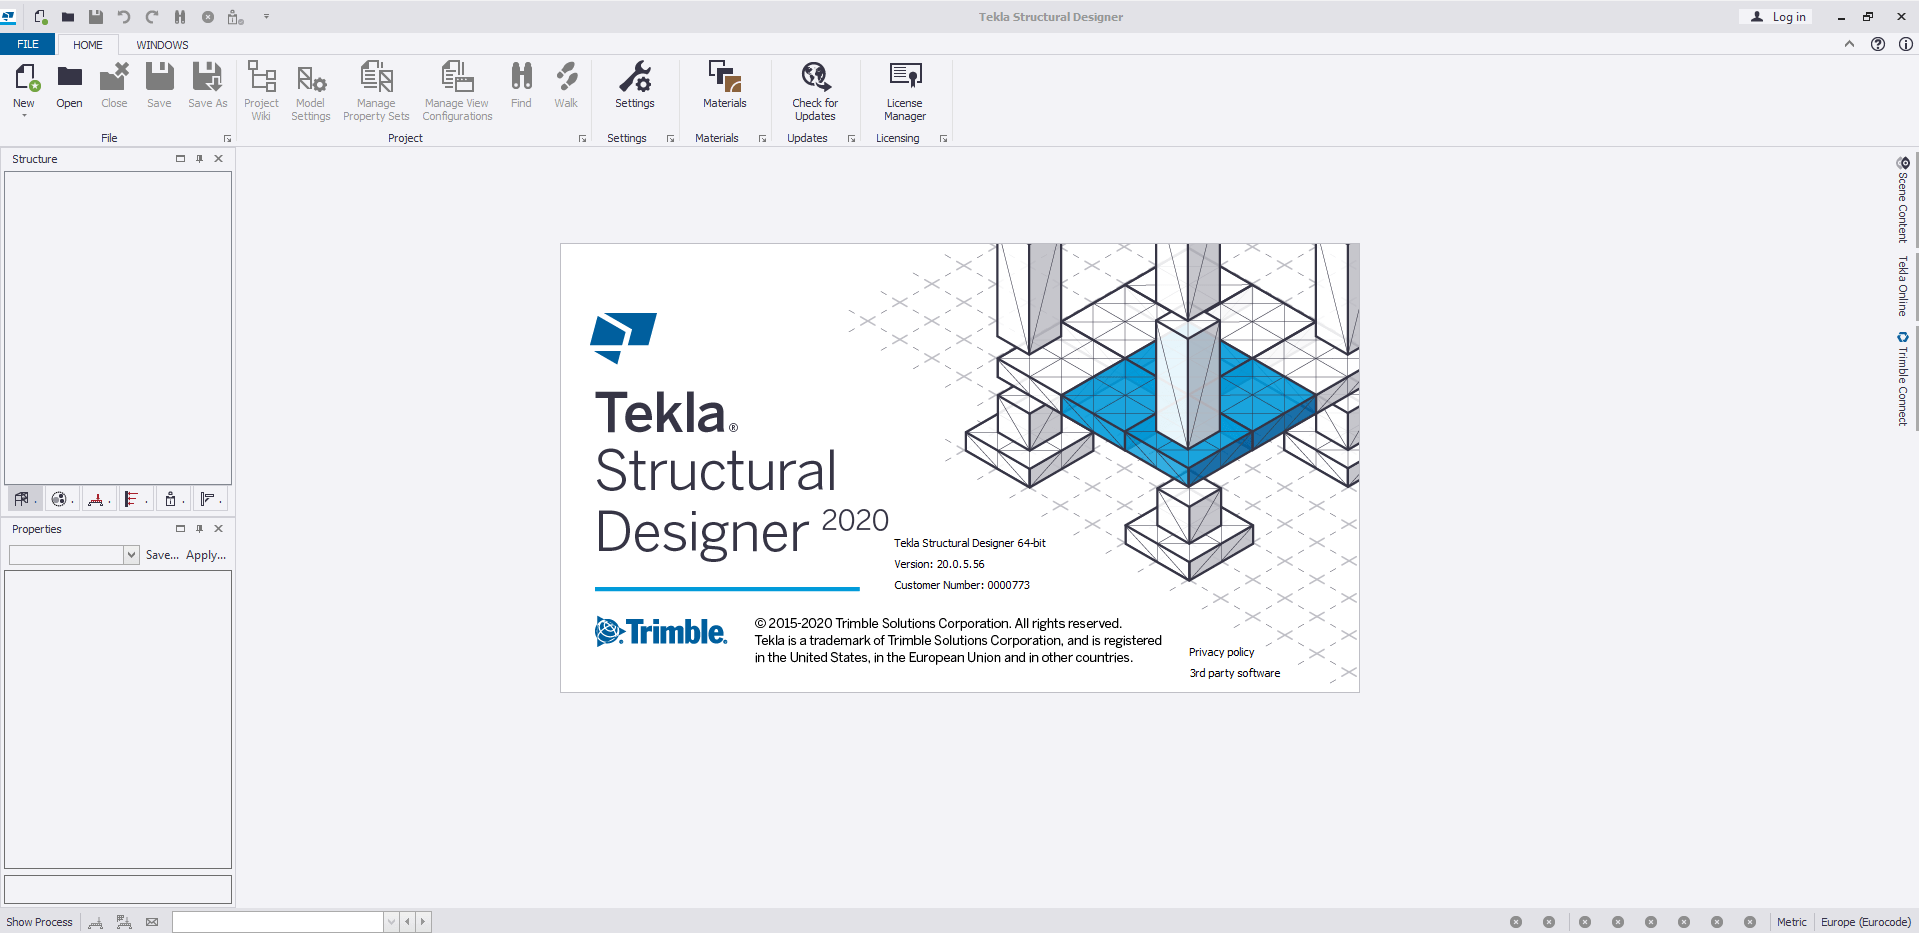 instal Tekla Structures 2023 SP4